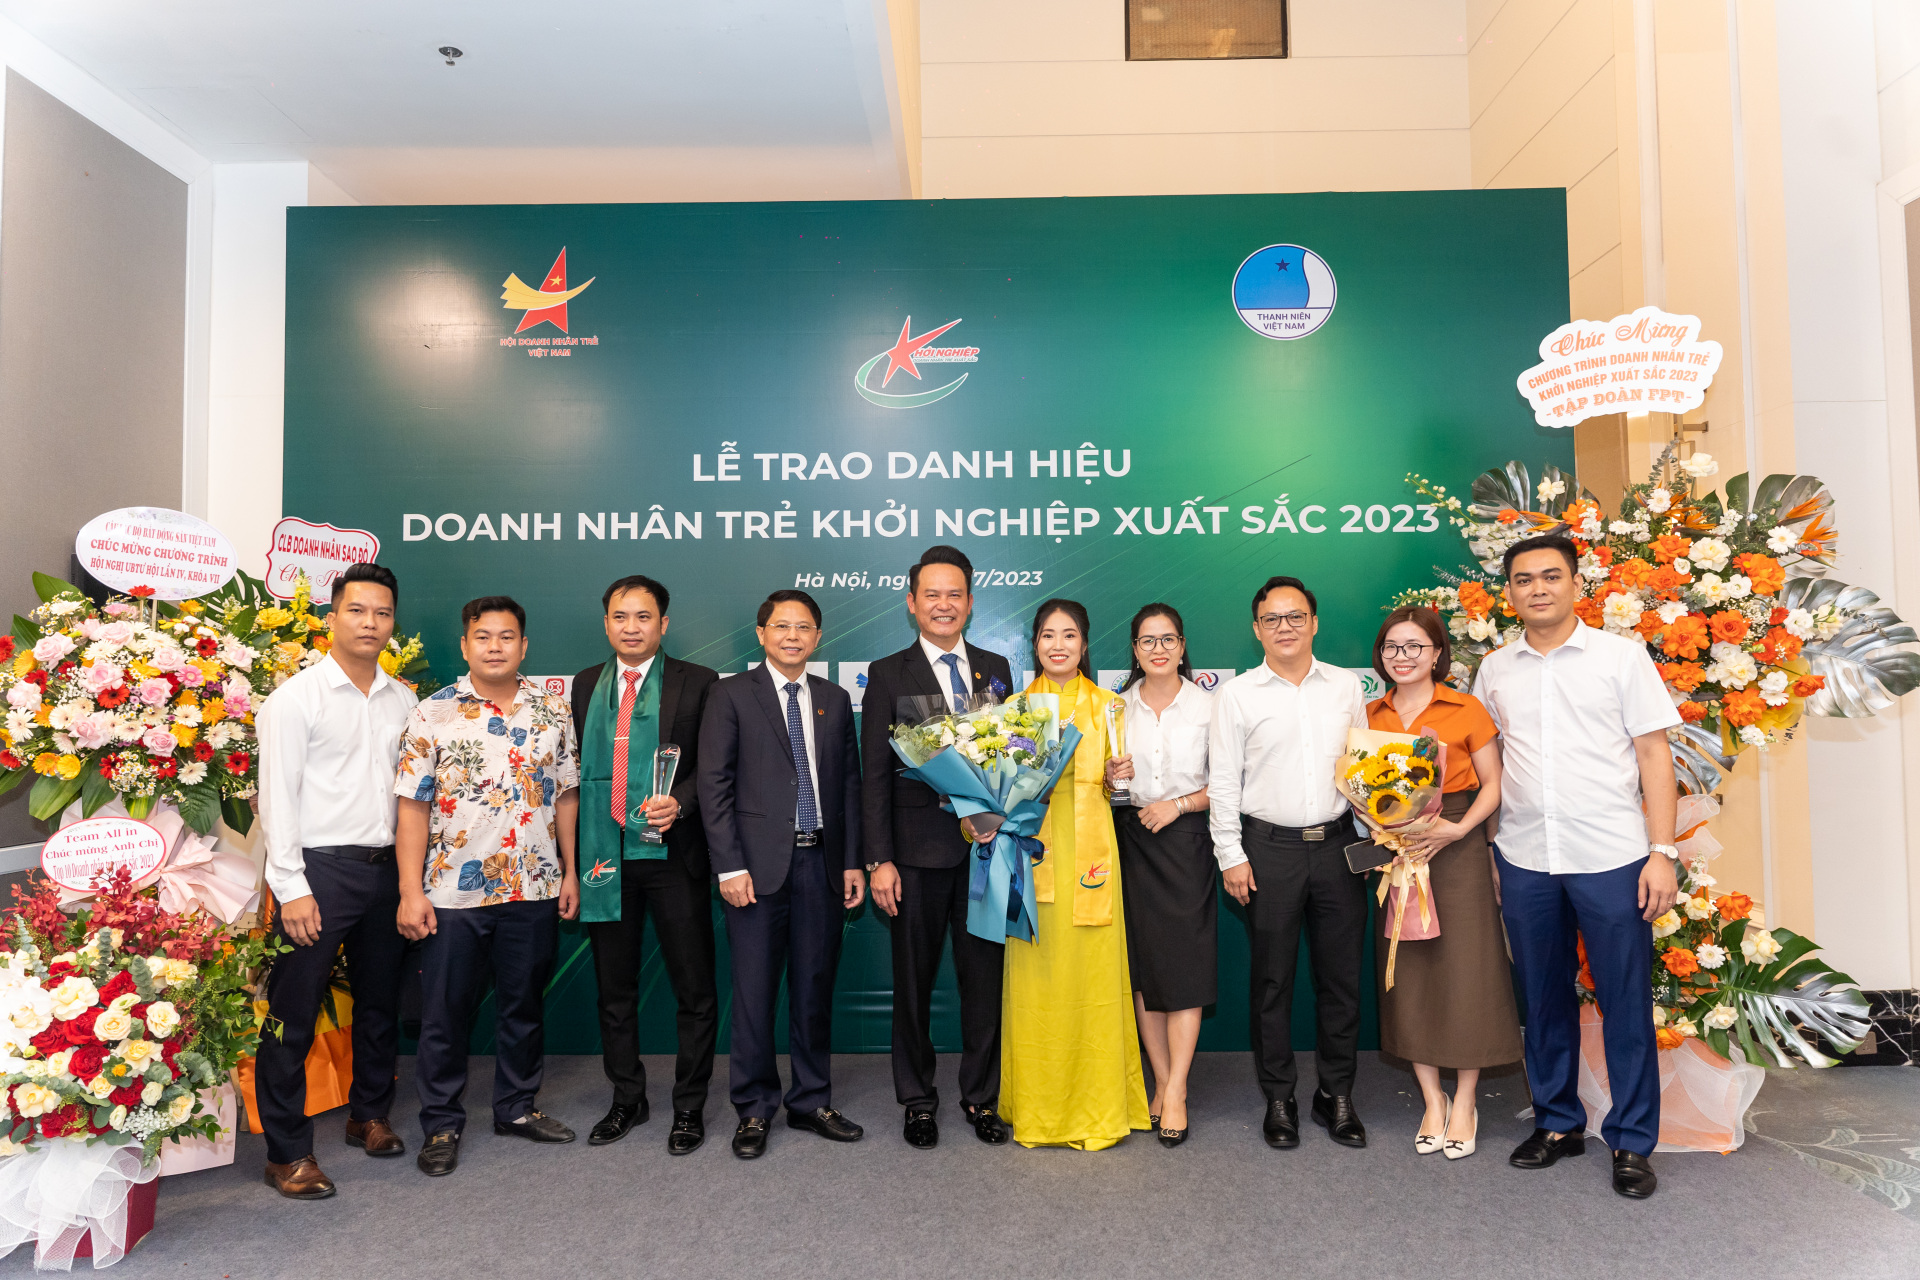 Chủ tịch Hội DNT Việt Nam cùng Hội DNT Bắc Ninh chúc mừng Chị Nguyễn Thị Hạnh tại sự kiện